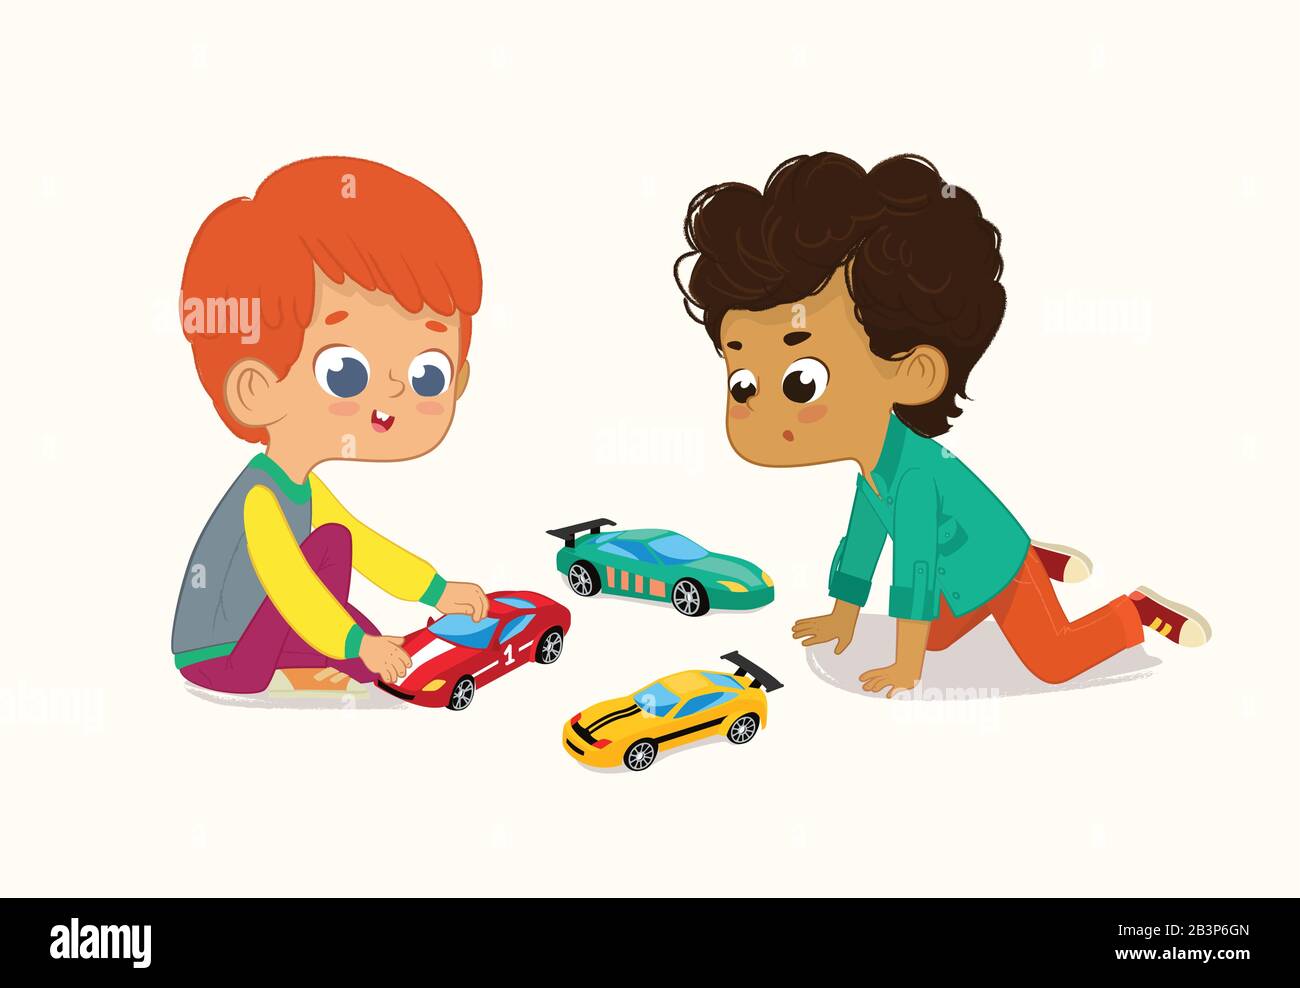 Illustration de deux Garçons Mignons Jouant avec Leurs jouets Cars. Un garçon de cheveux rouge montre et partage ses voitures de jouet à Son ami afro-américain. Illustration de Vecteur